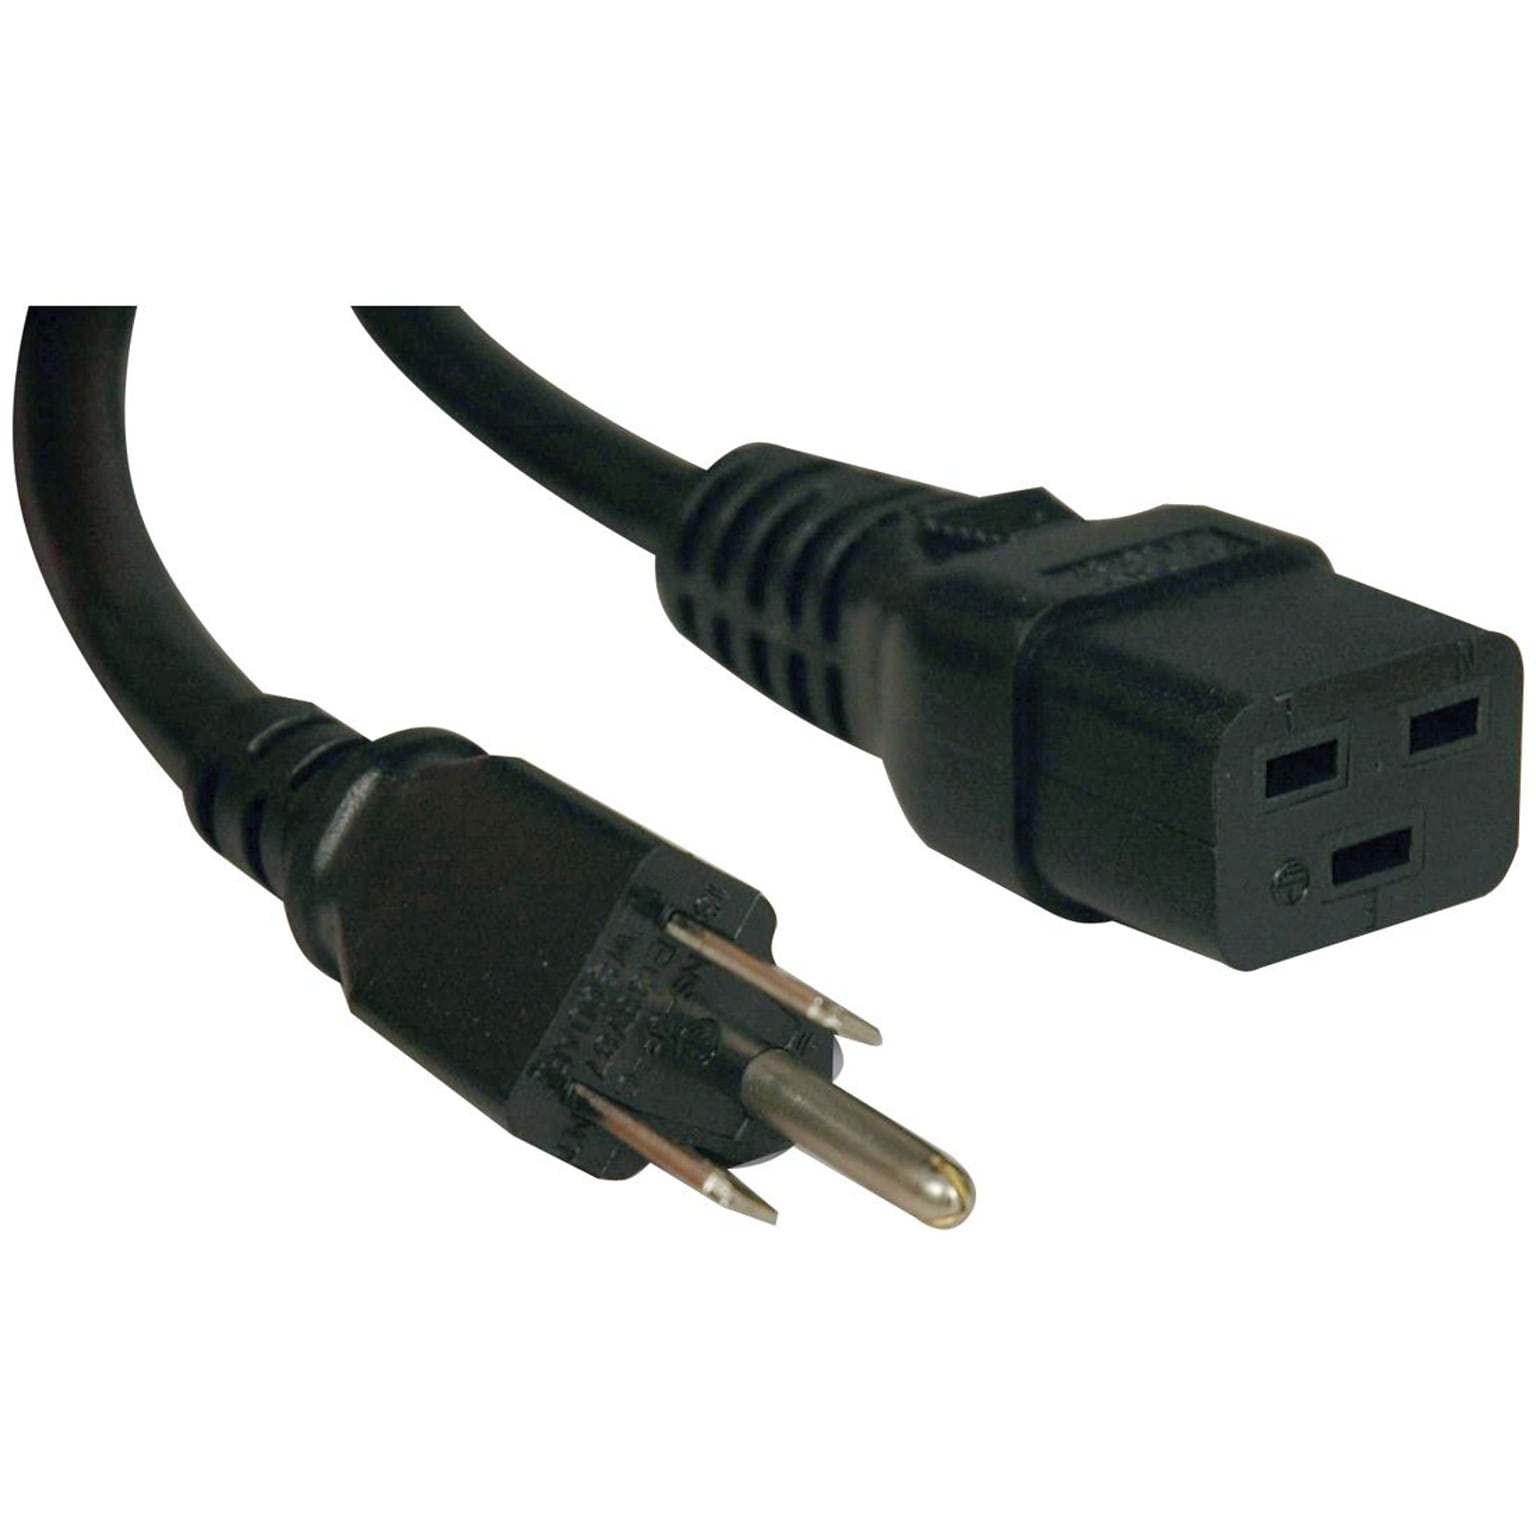 Tripp Lite 10 IEC-320-C19 to NEMA 5-15P Heavy Duty Power Cord; Black